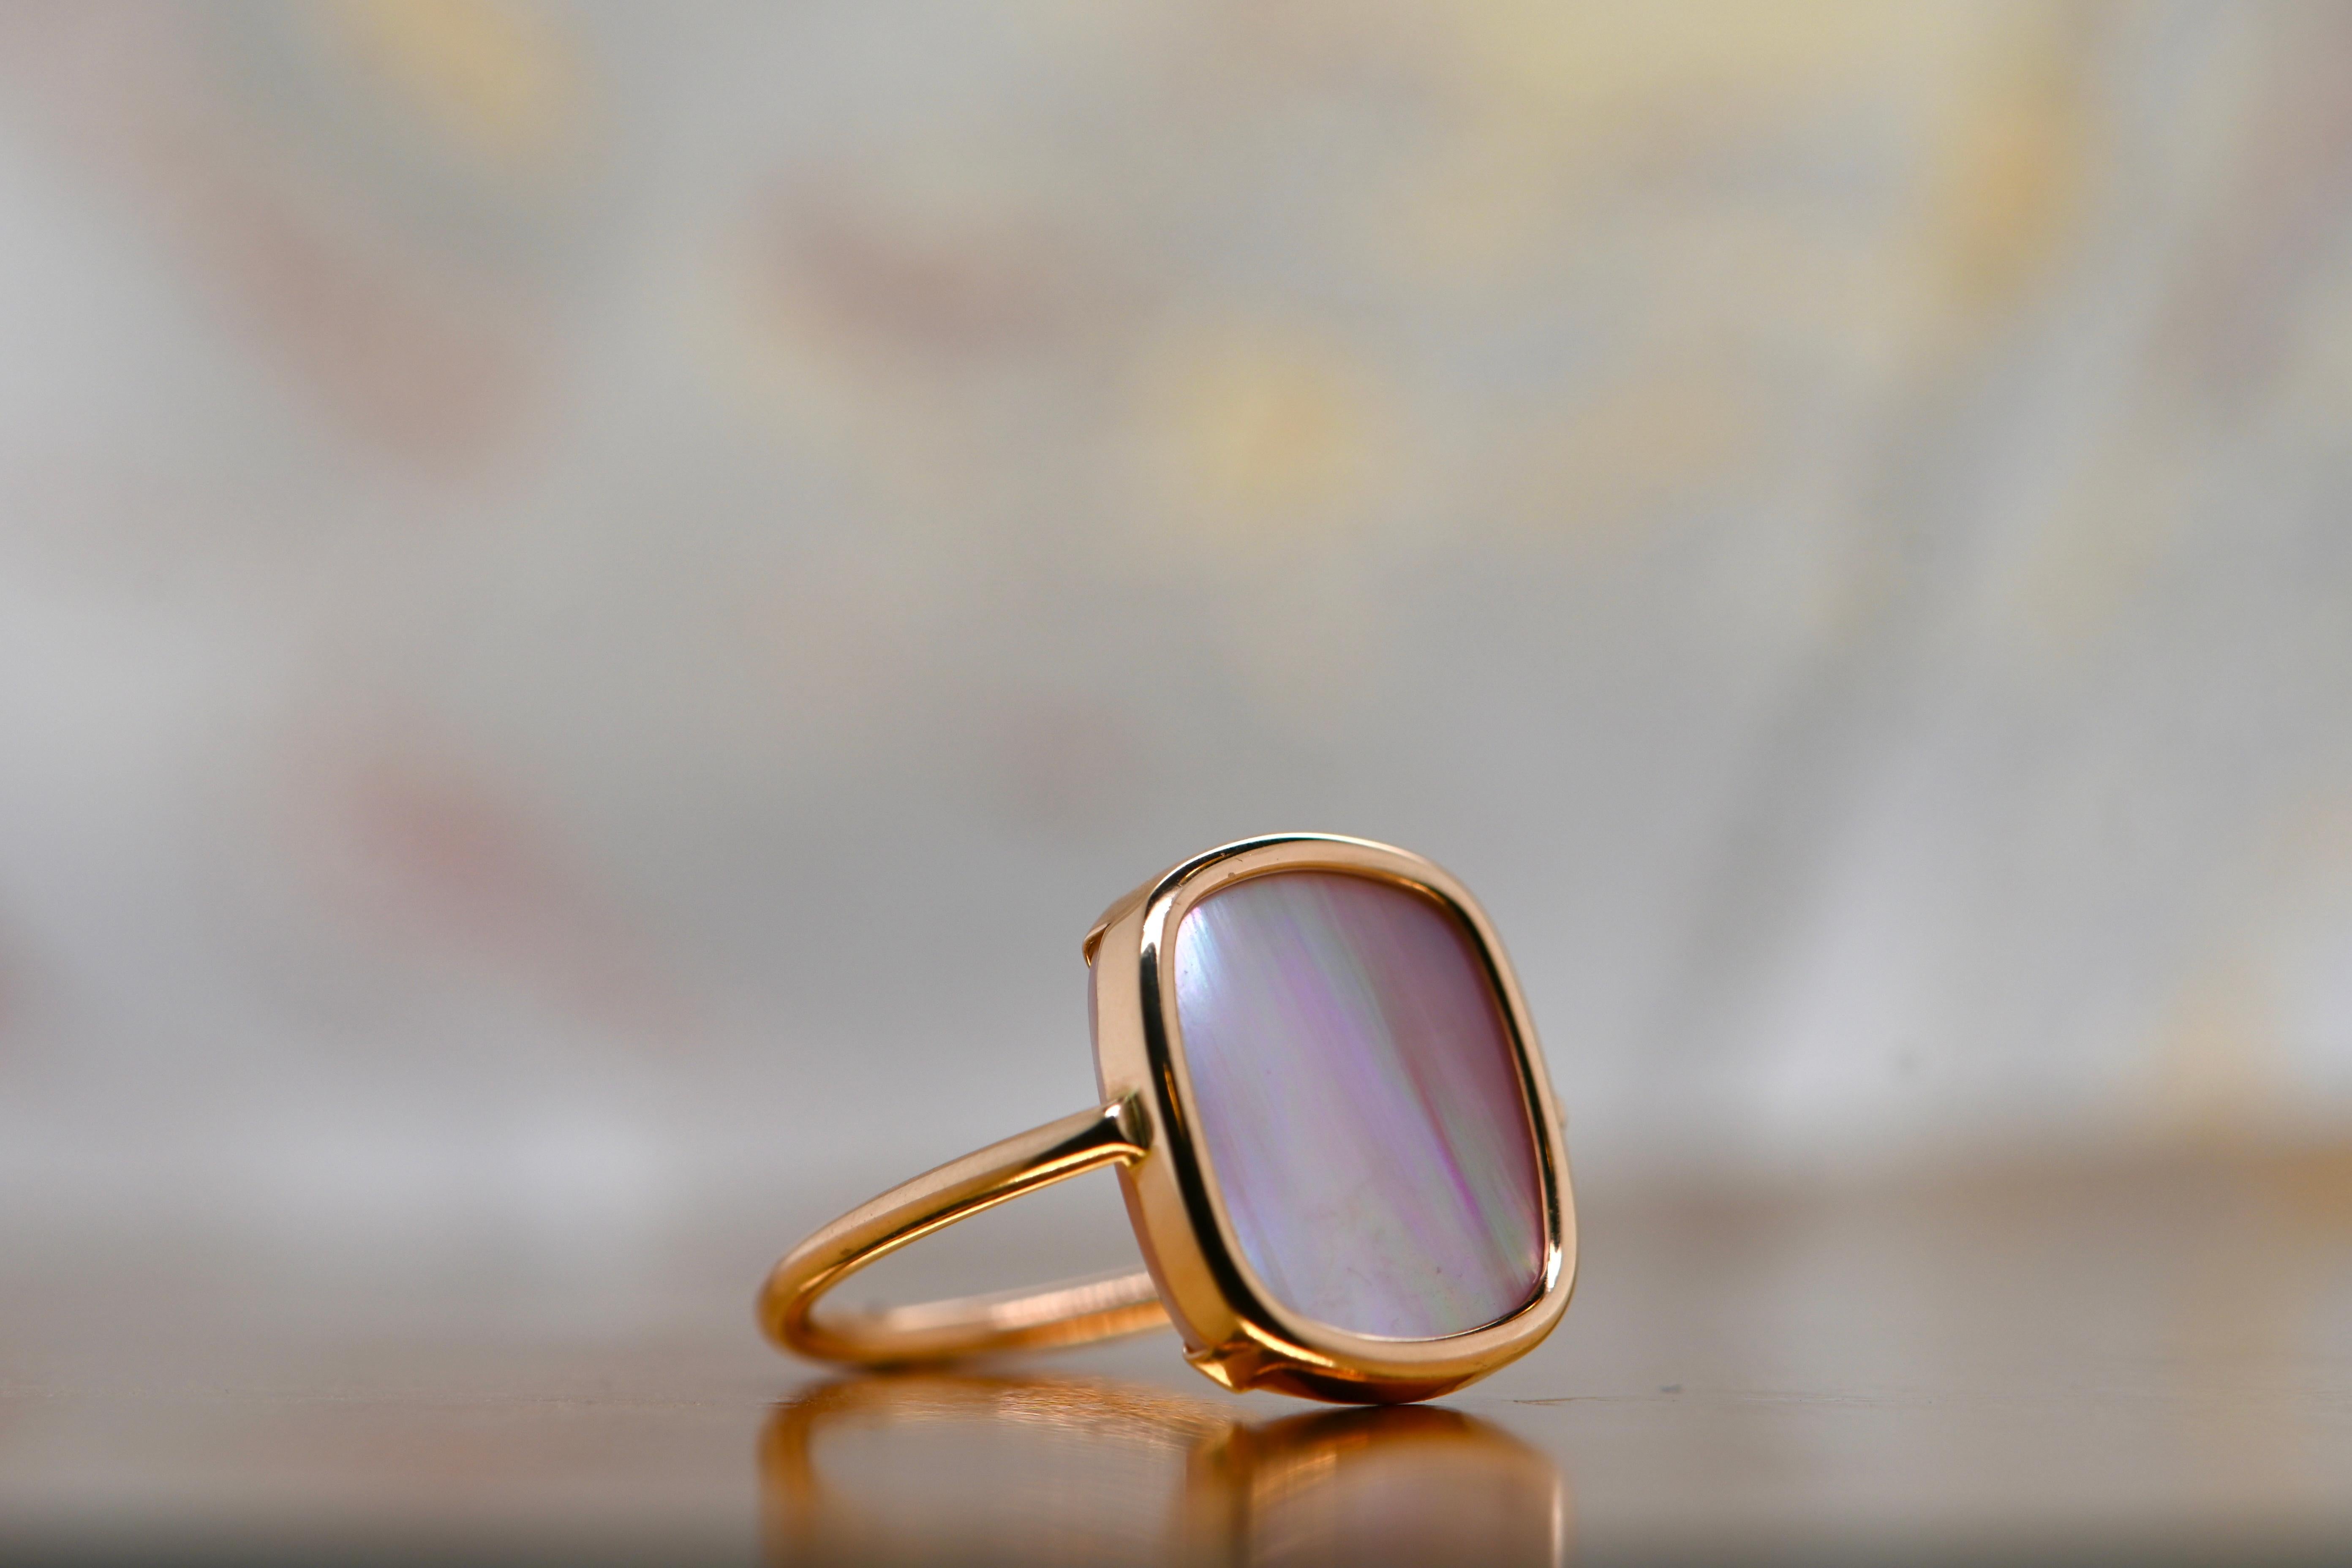 Entdecken Sie die exquisite Schönheit eines wahren Kunstwerks an Ihrem Finger mit diesem prächtigen Ring aus 18 Karat Roségold. Seine zarte und raffinierte Ausstrahlung wird durch eine Fassung mit zarten rosafarbenen Perlmuttsteinen noch verstärkt